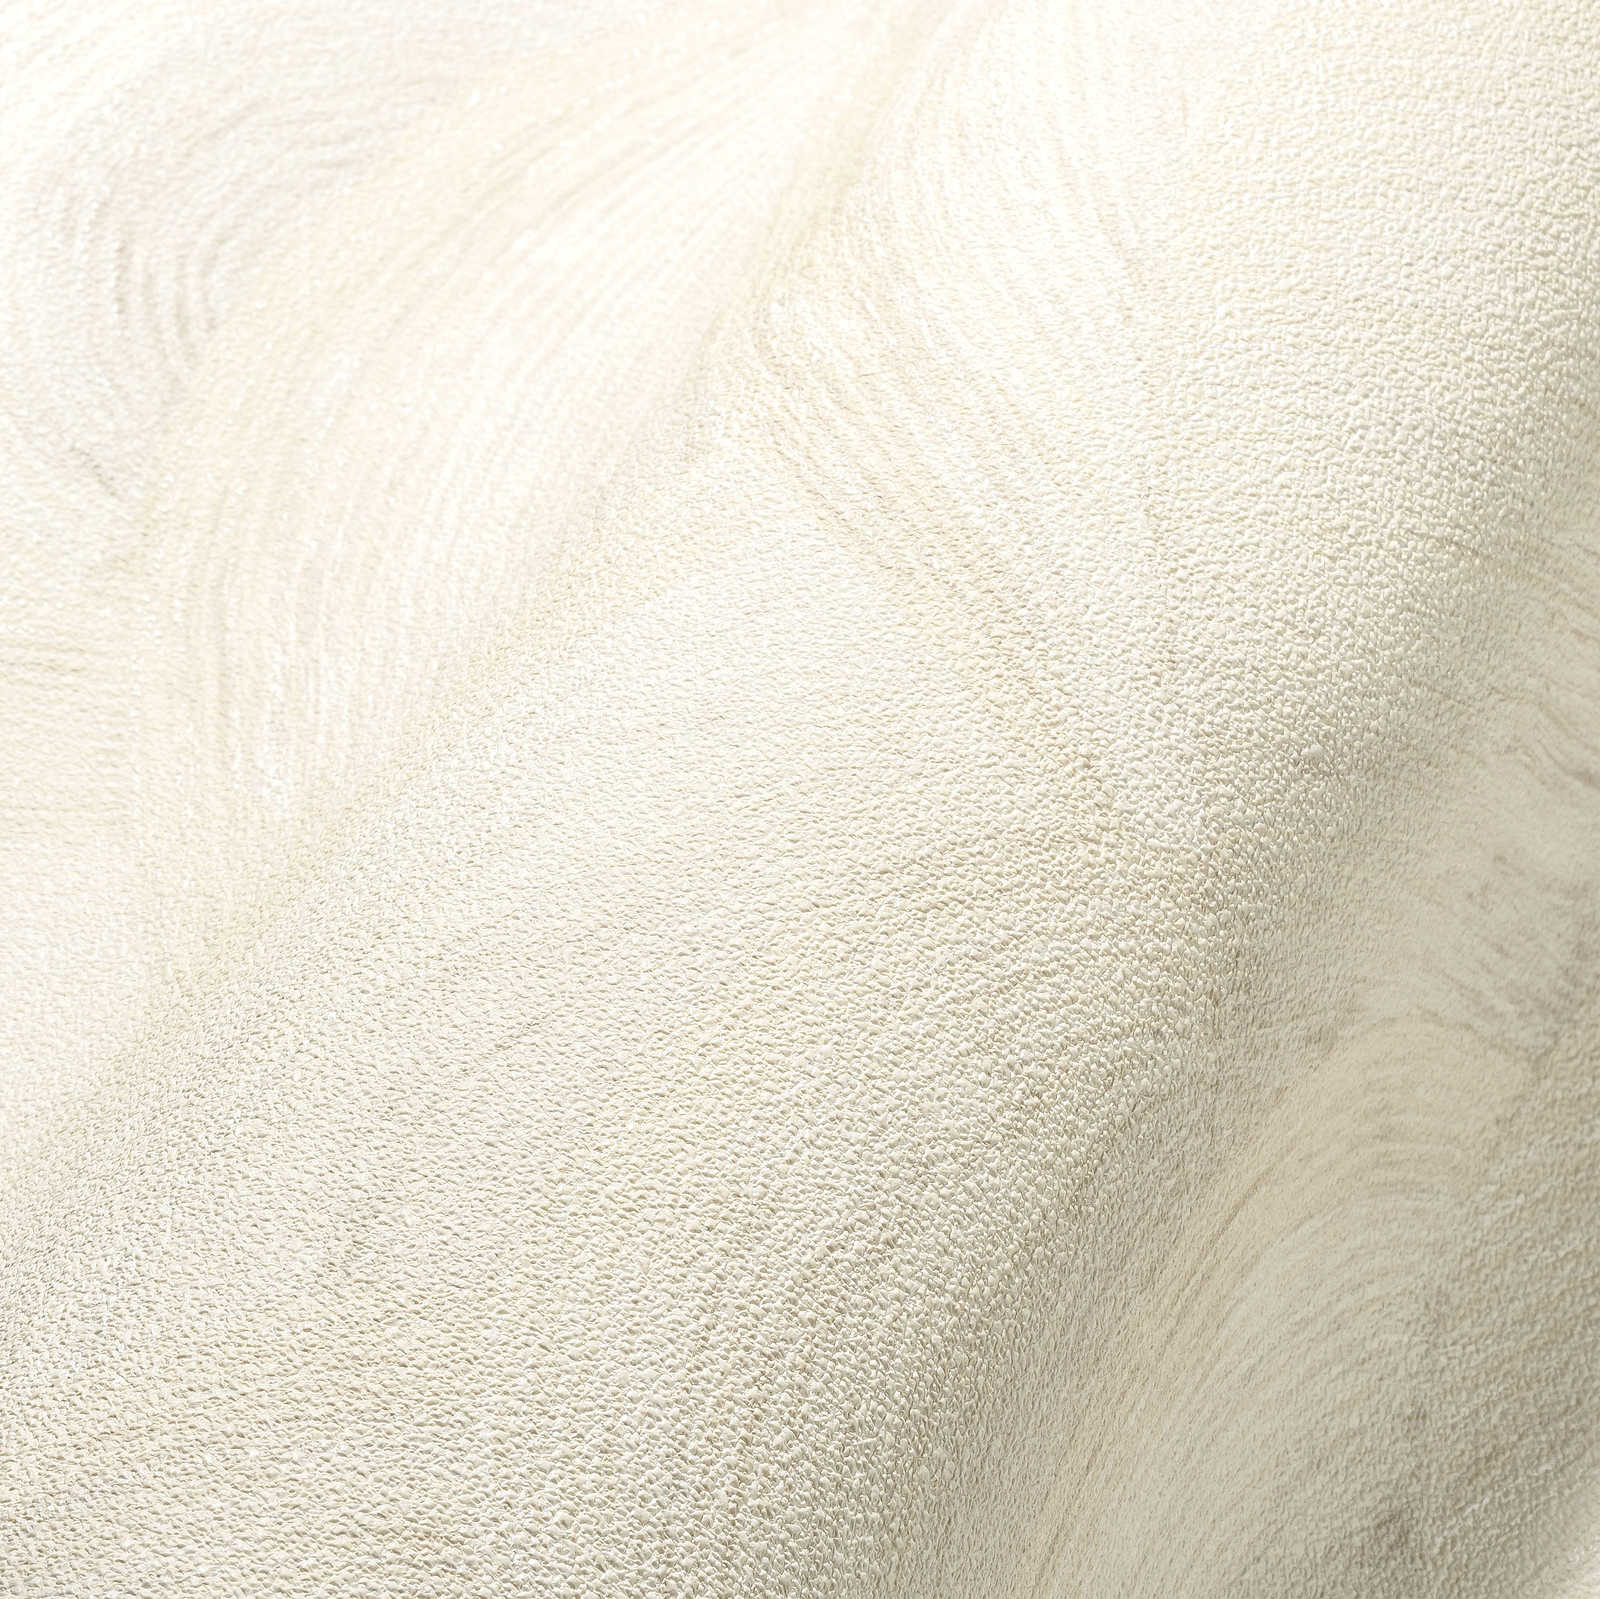             Vliestapete mit dezenten Wellenmuster – Weiß, Creme, Grau
        